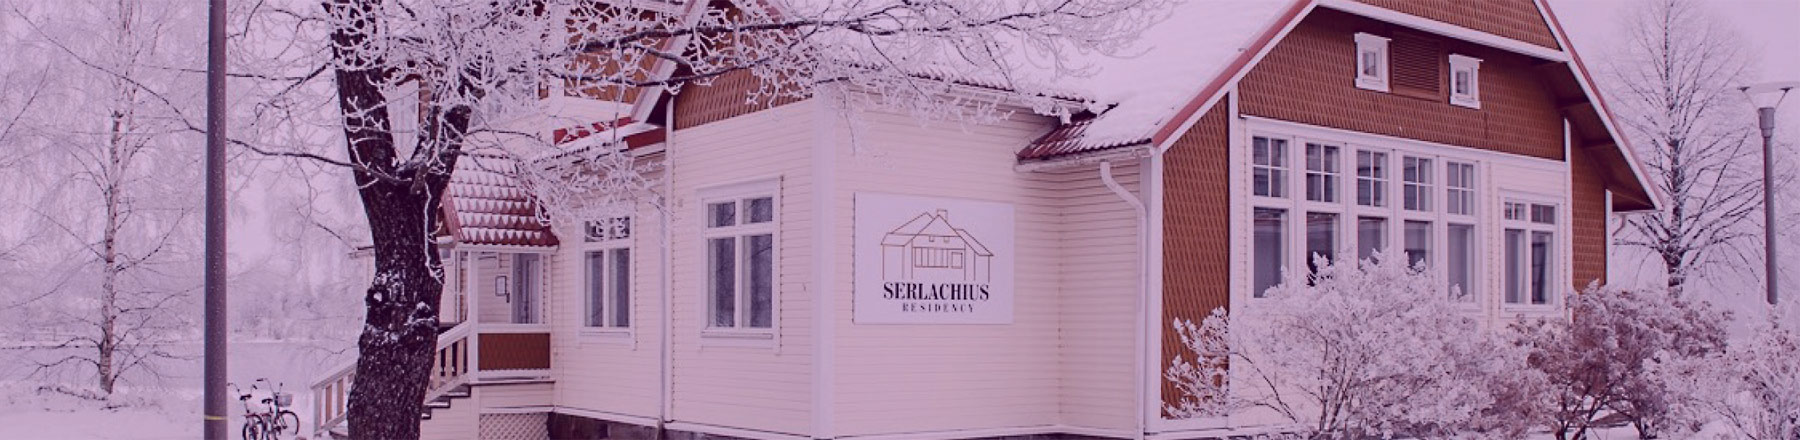 Serlachius-residenssi